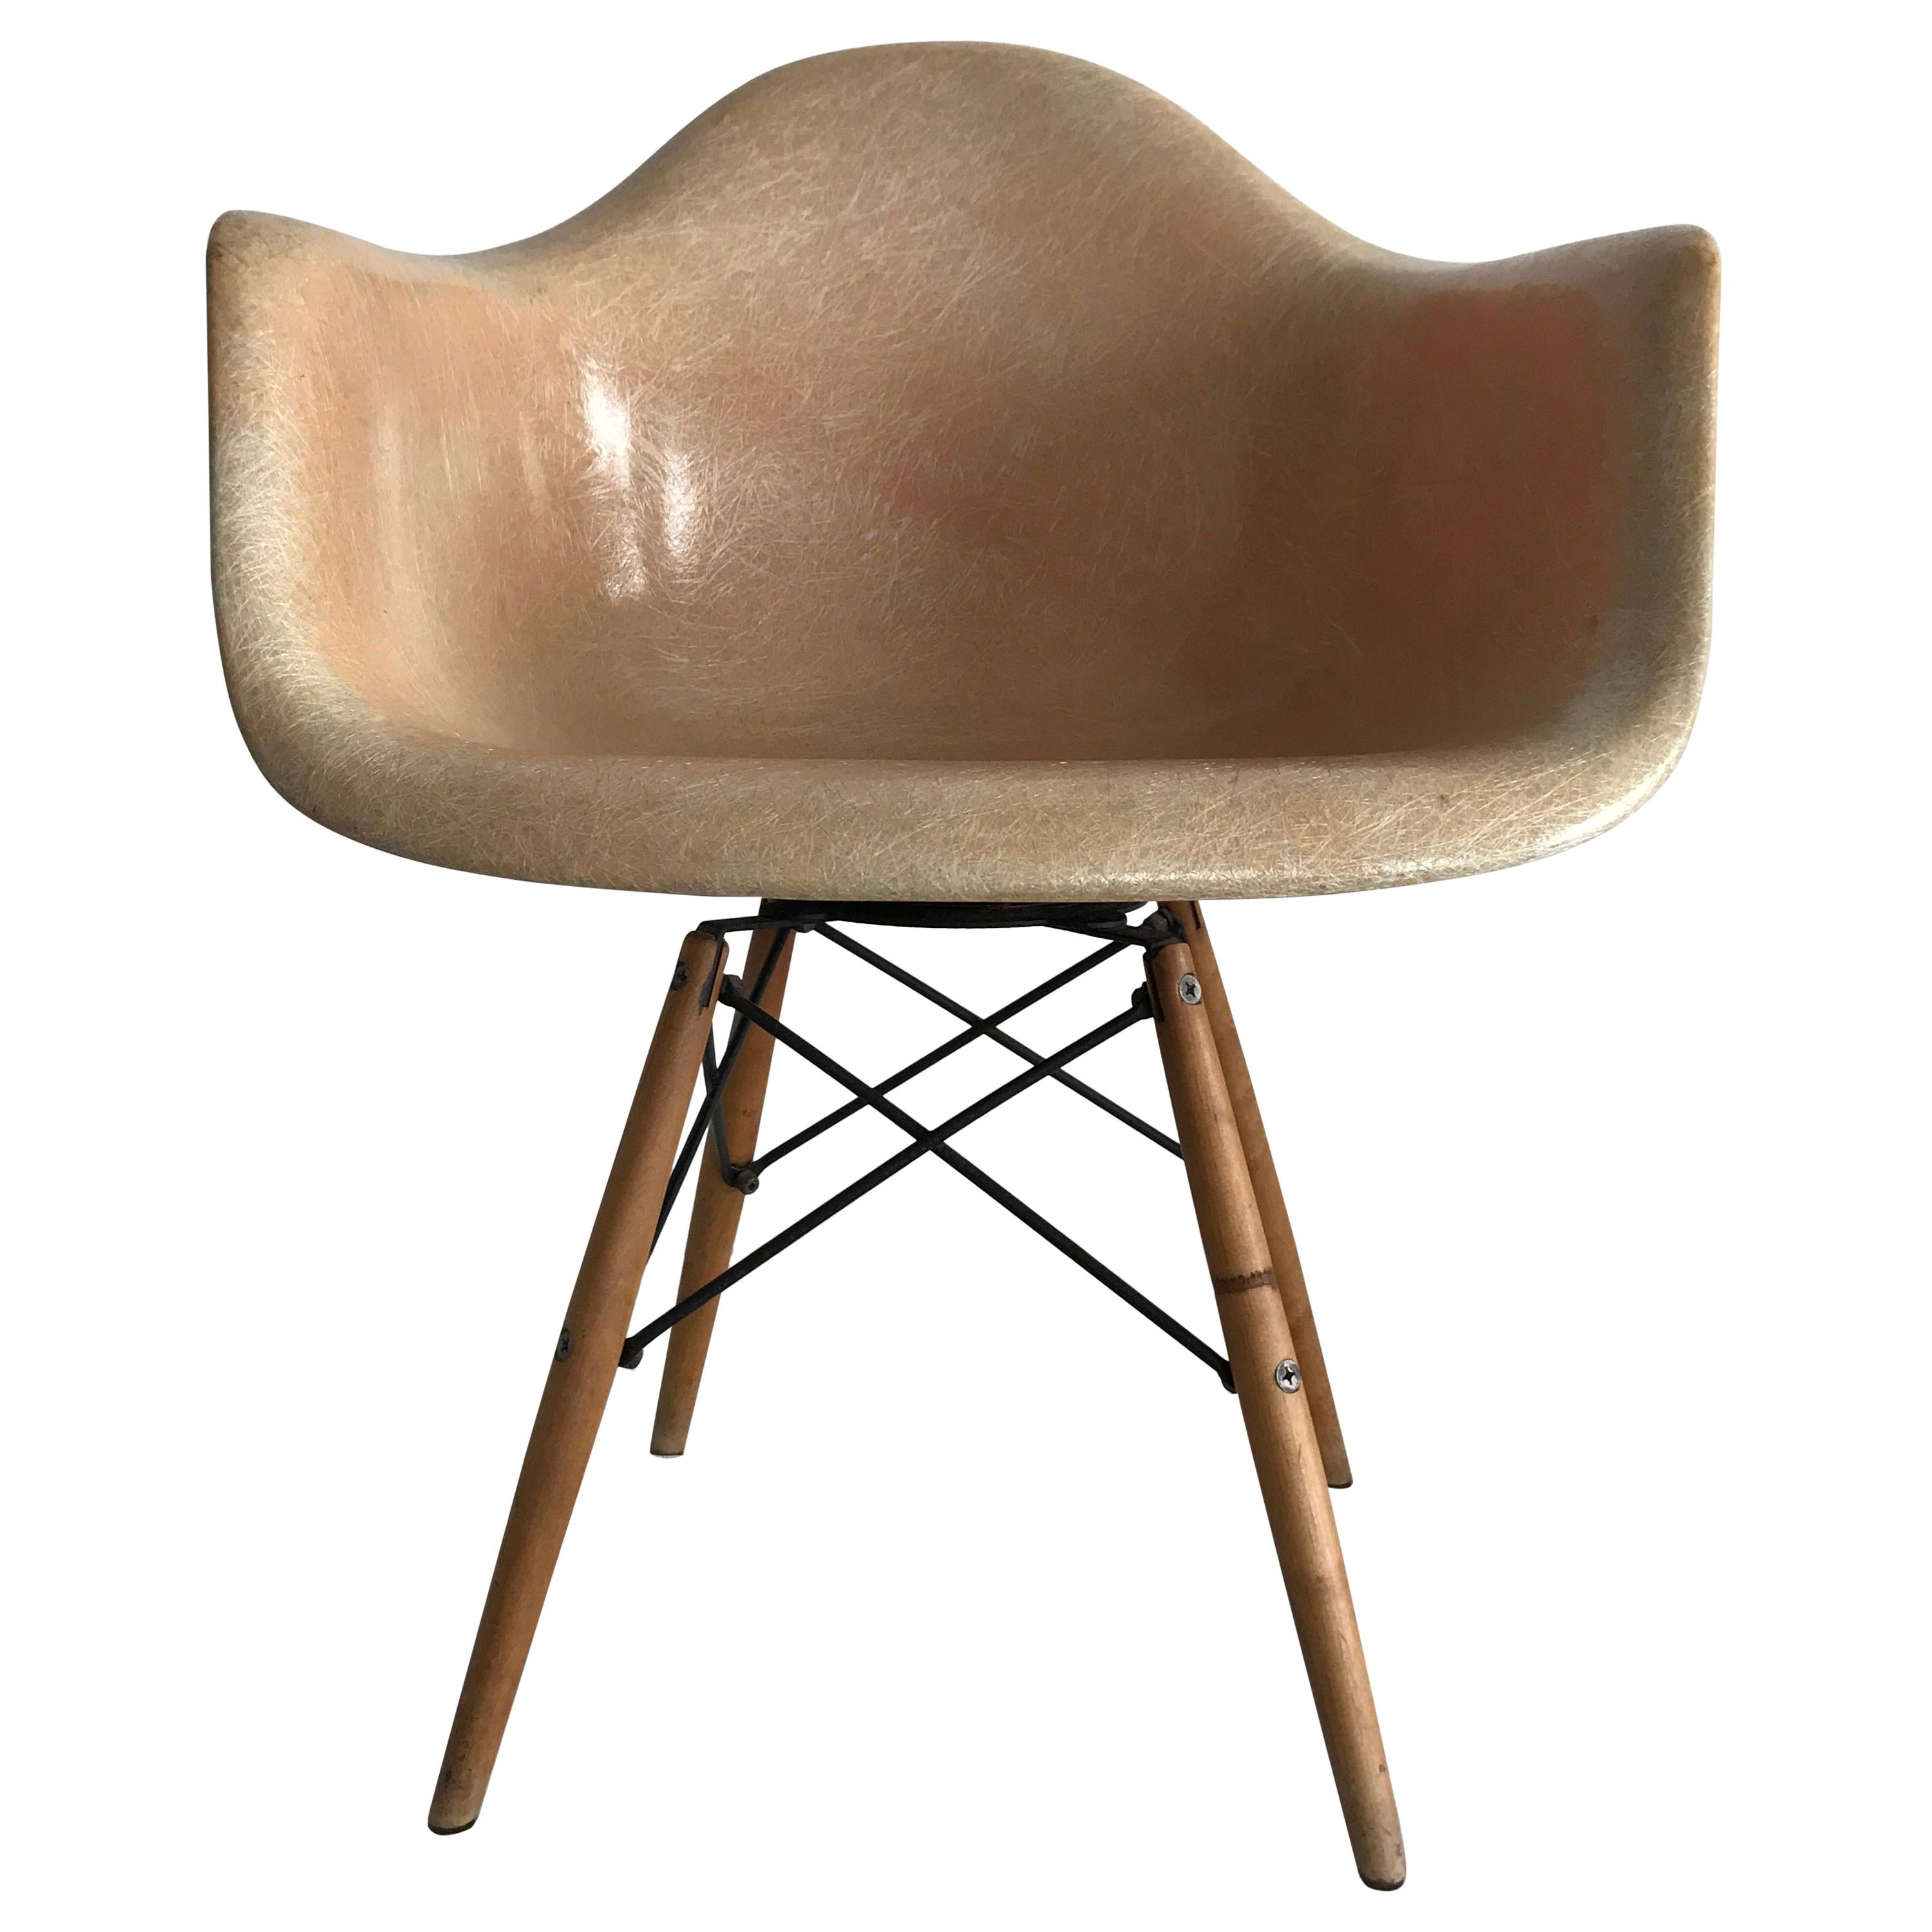 Première édition de la "Paw Chair" de Charles Eames:: pivotante:: en fibre de verre:: pieds goujonnés:: en bouleau